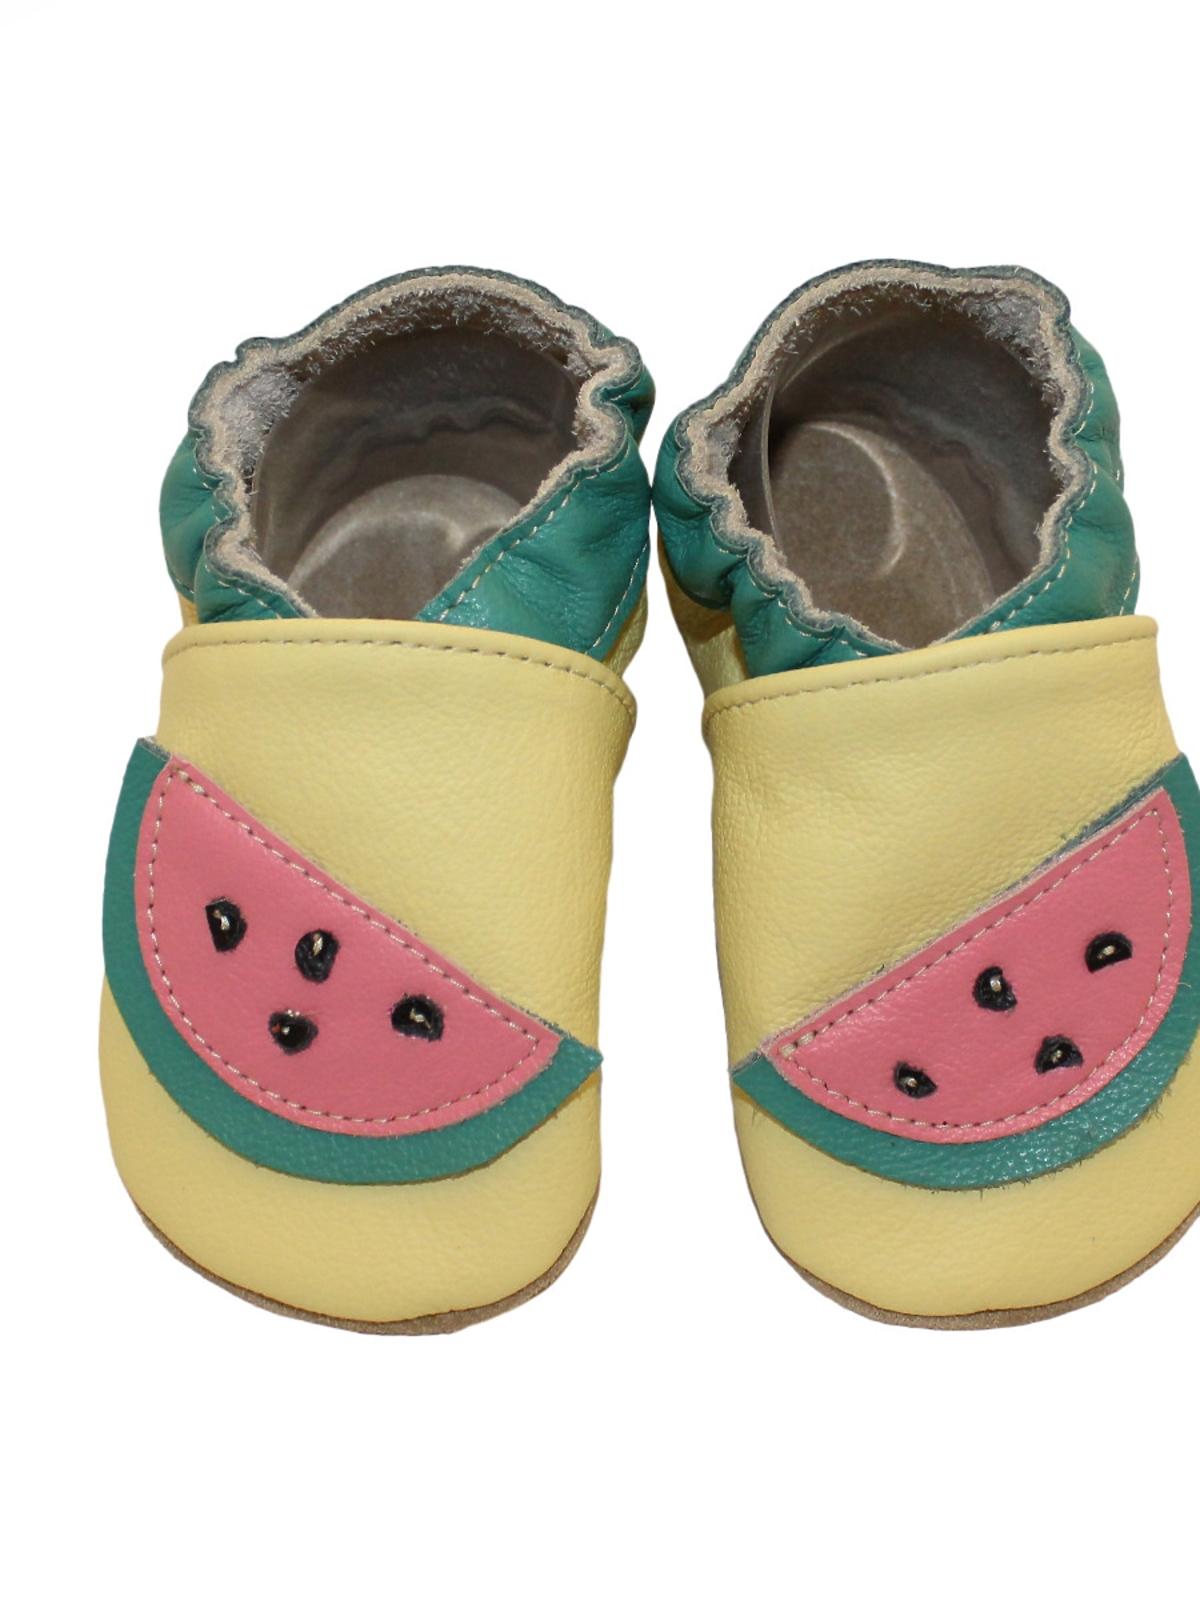 buty skórzane z arbuzami dla dziecka.jpg